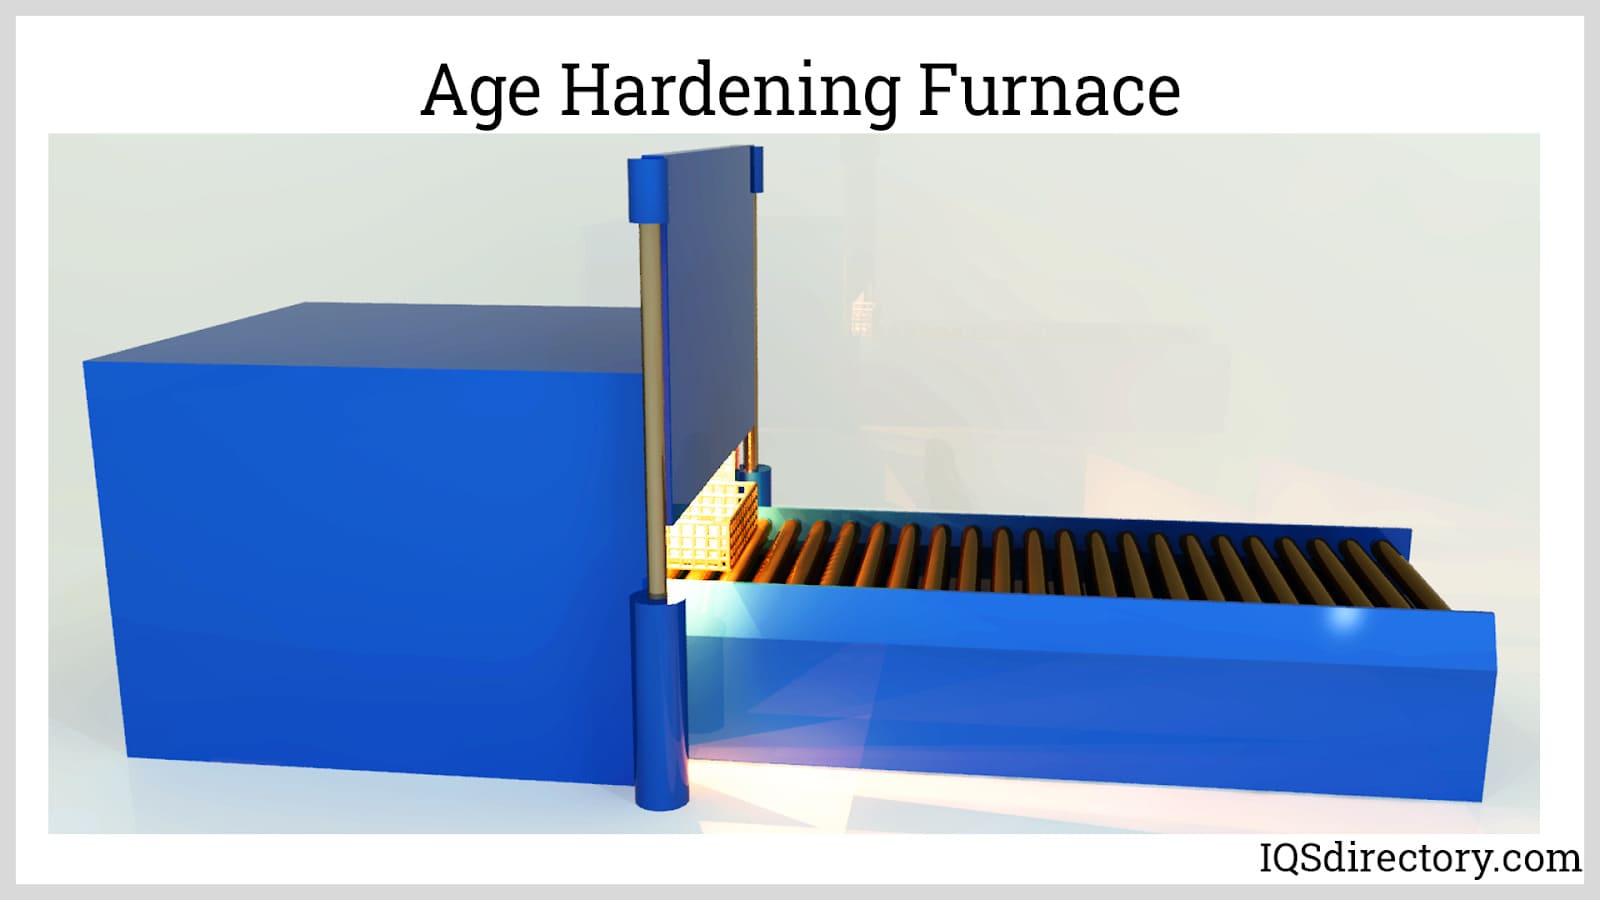 Age Hardening Furnace